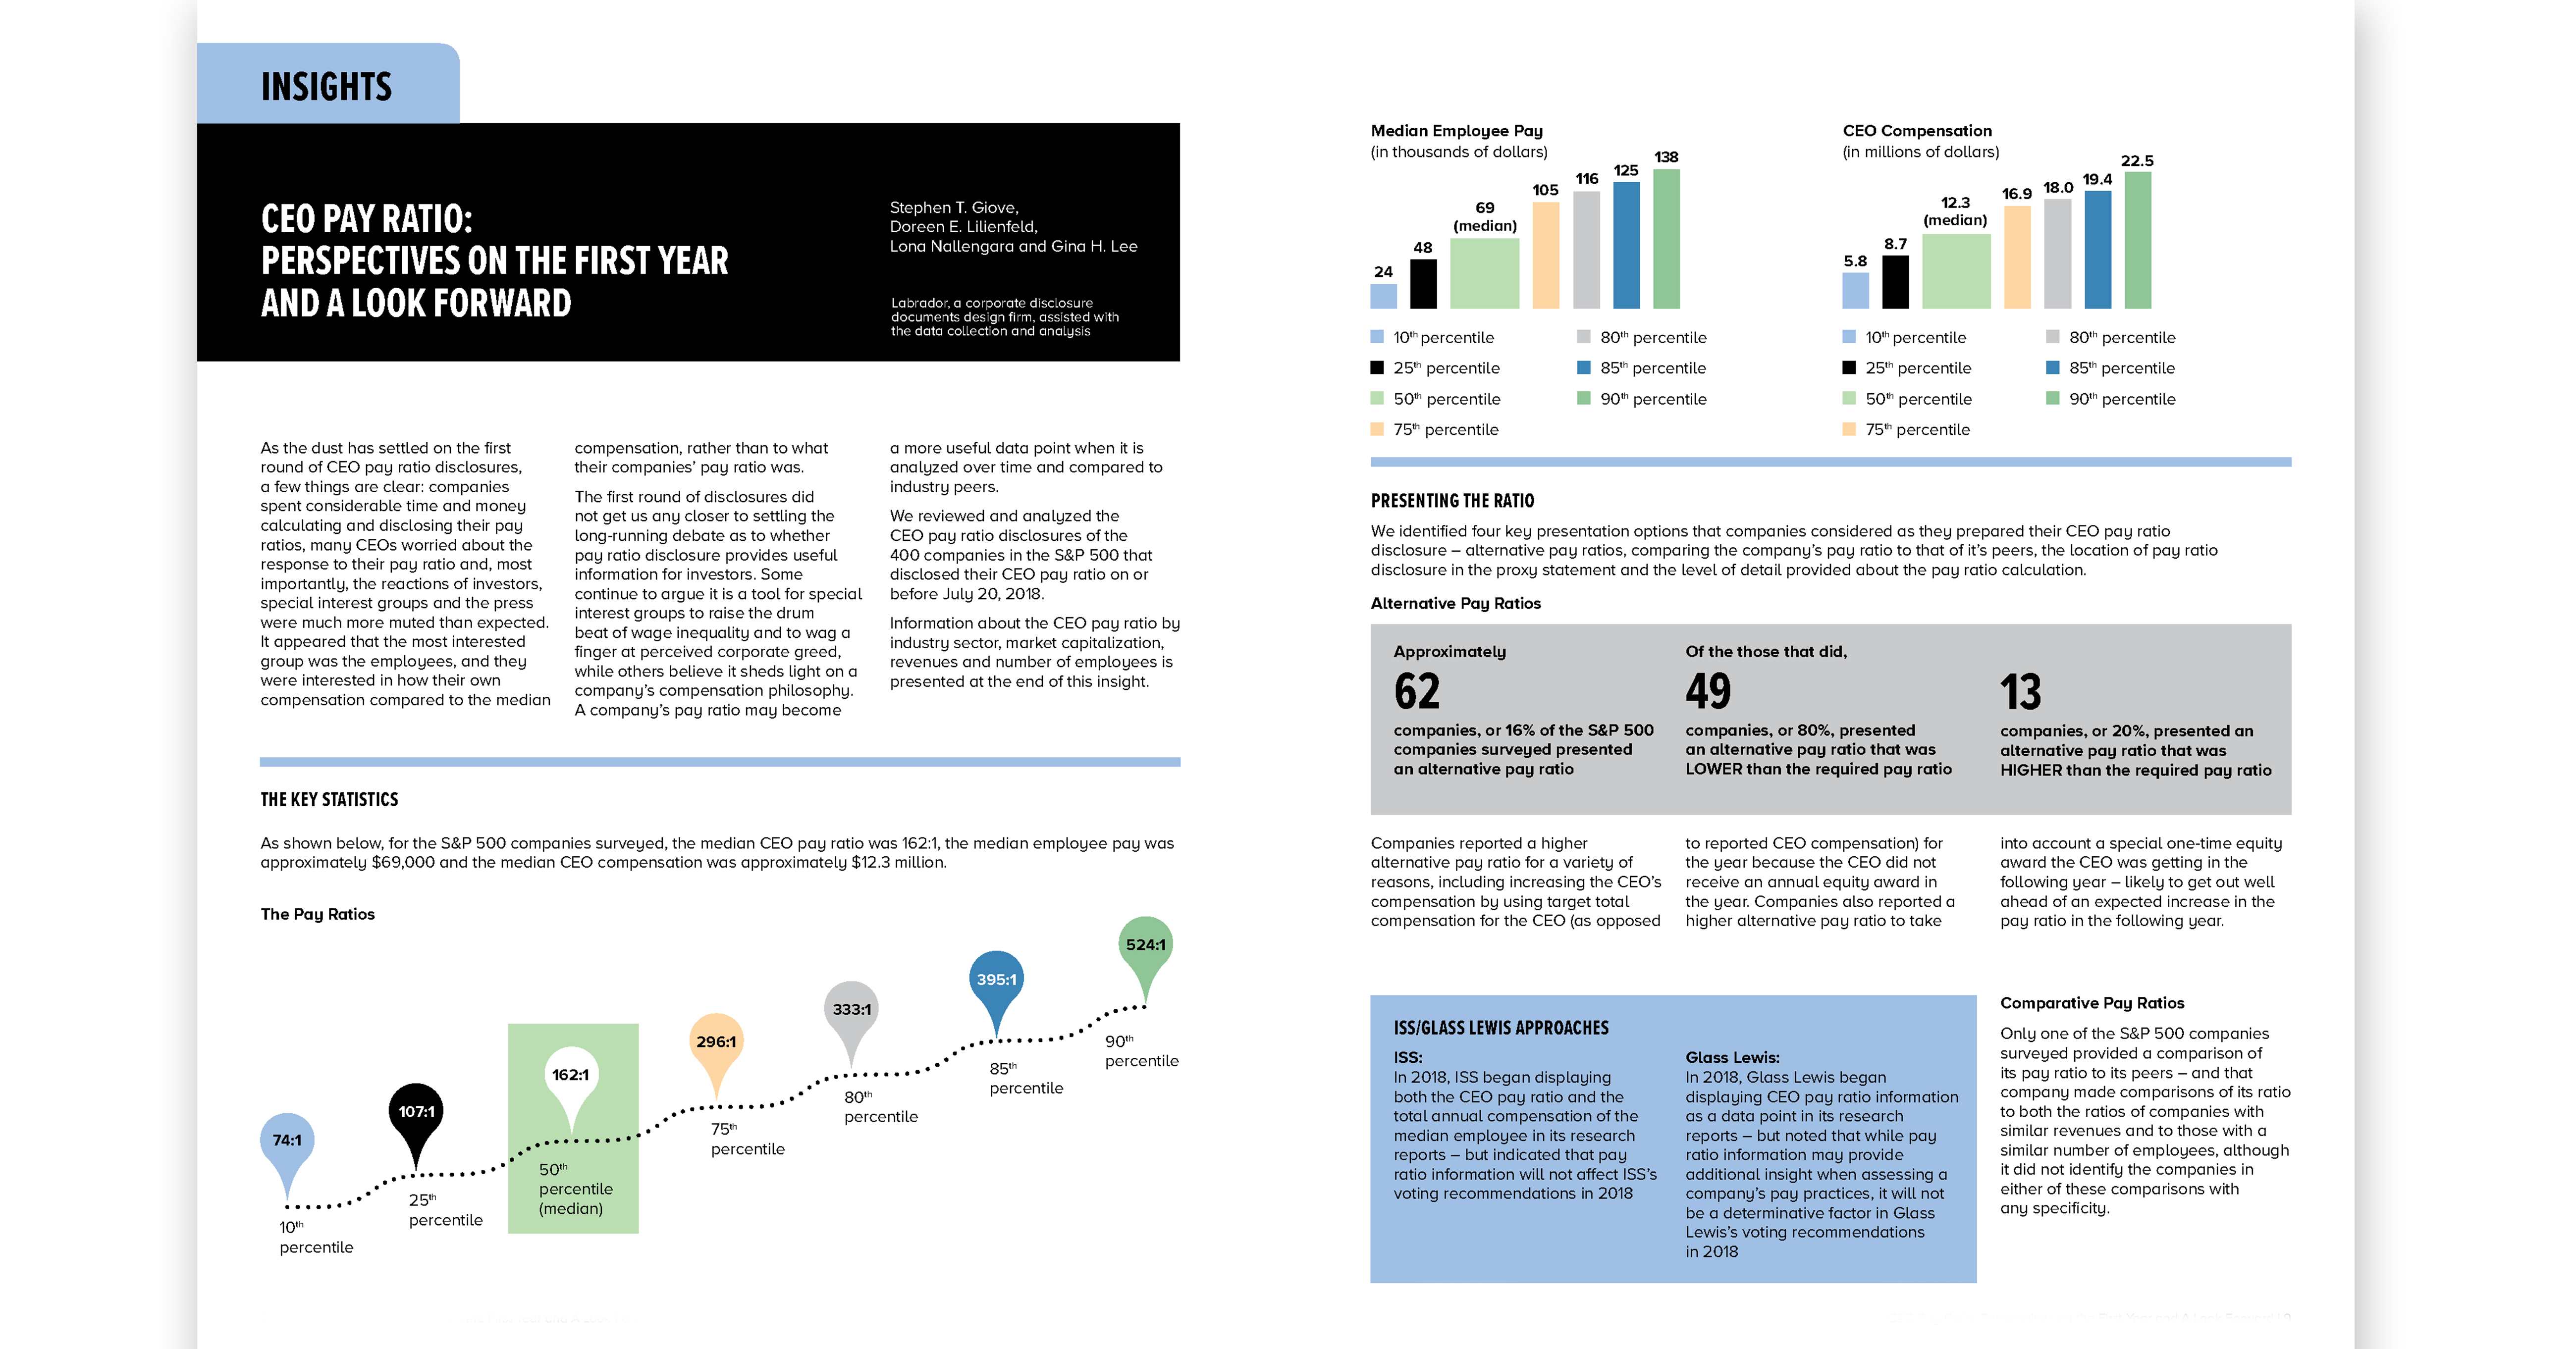 sherman sterling 2018 Corporate Governance Survey insights page